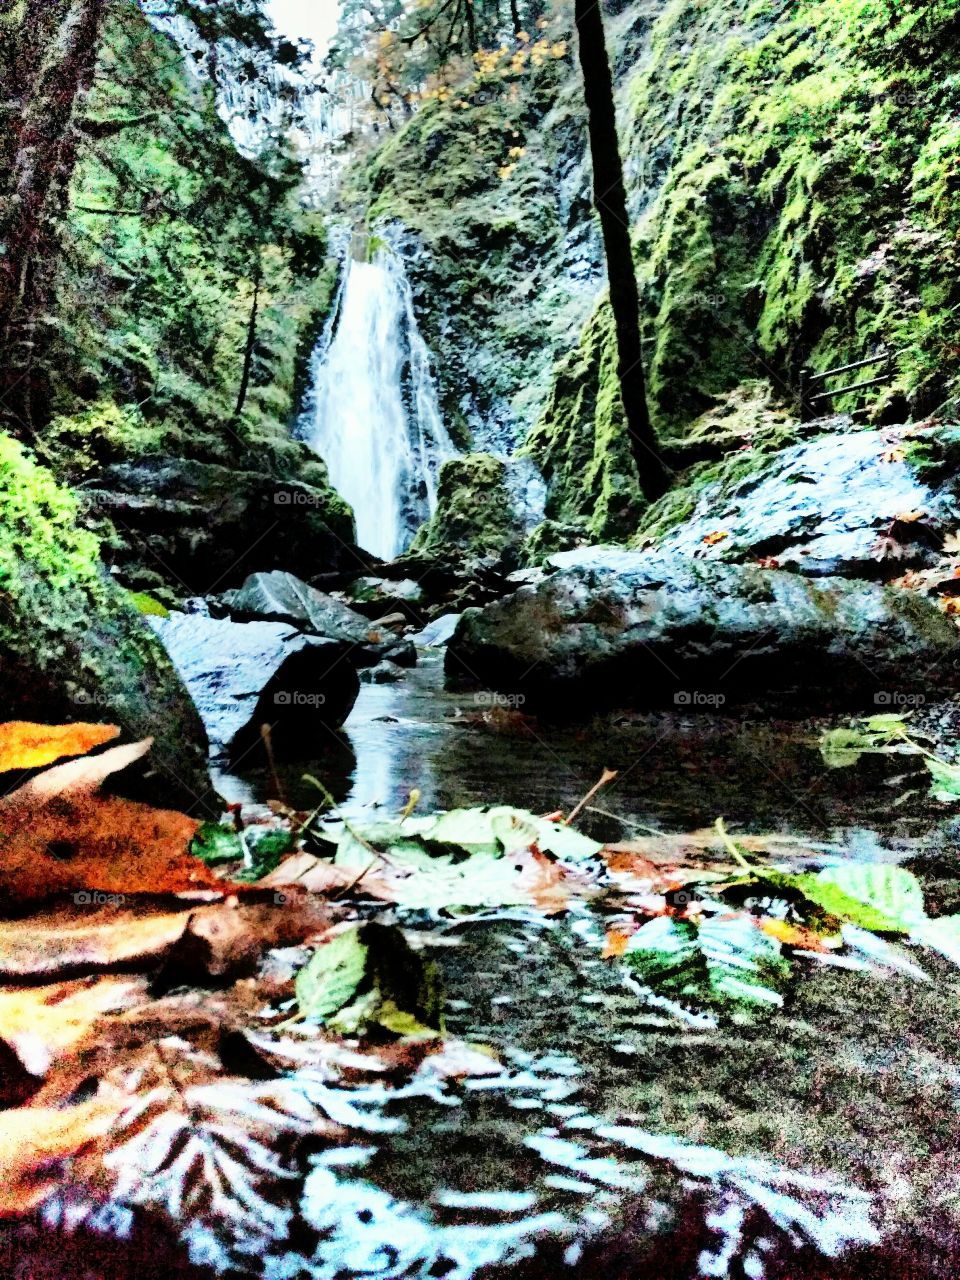 Susan Creek falls